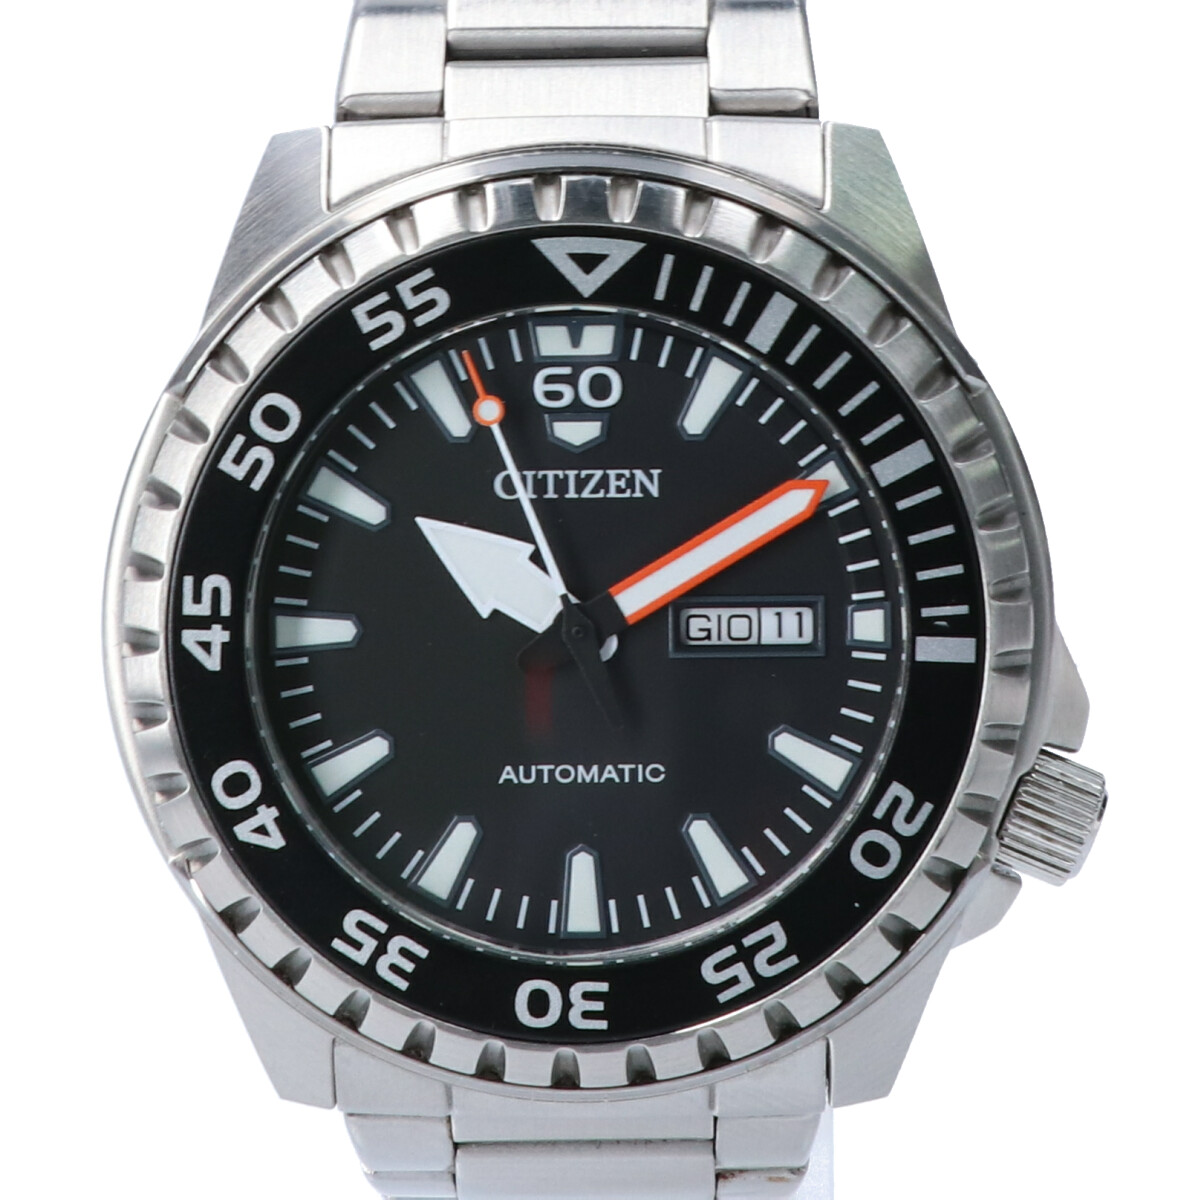 シチズンのNH8388-81E 海外モデル メガダイバー OFコレクションデイデイト 自動巻き 腕時計の買取実績です。